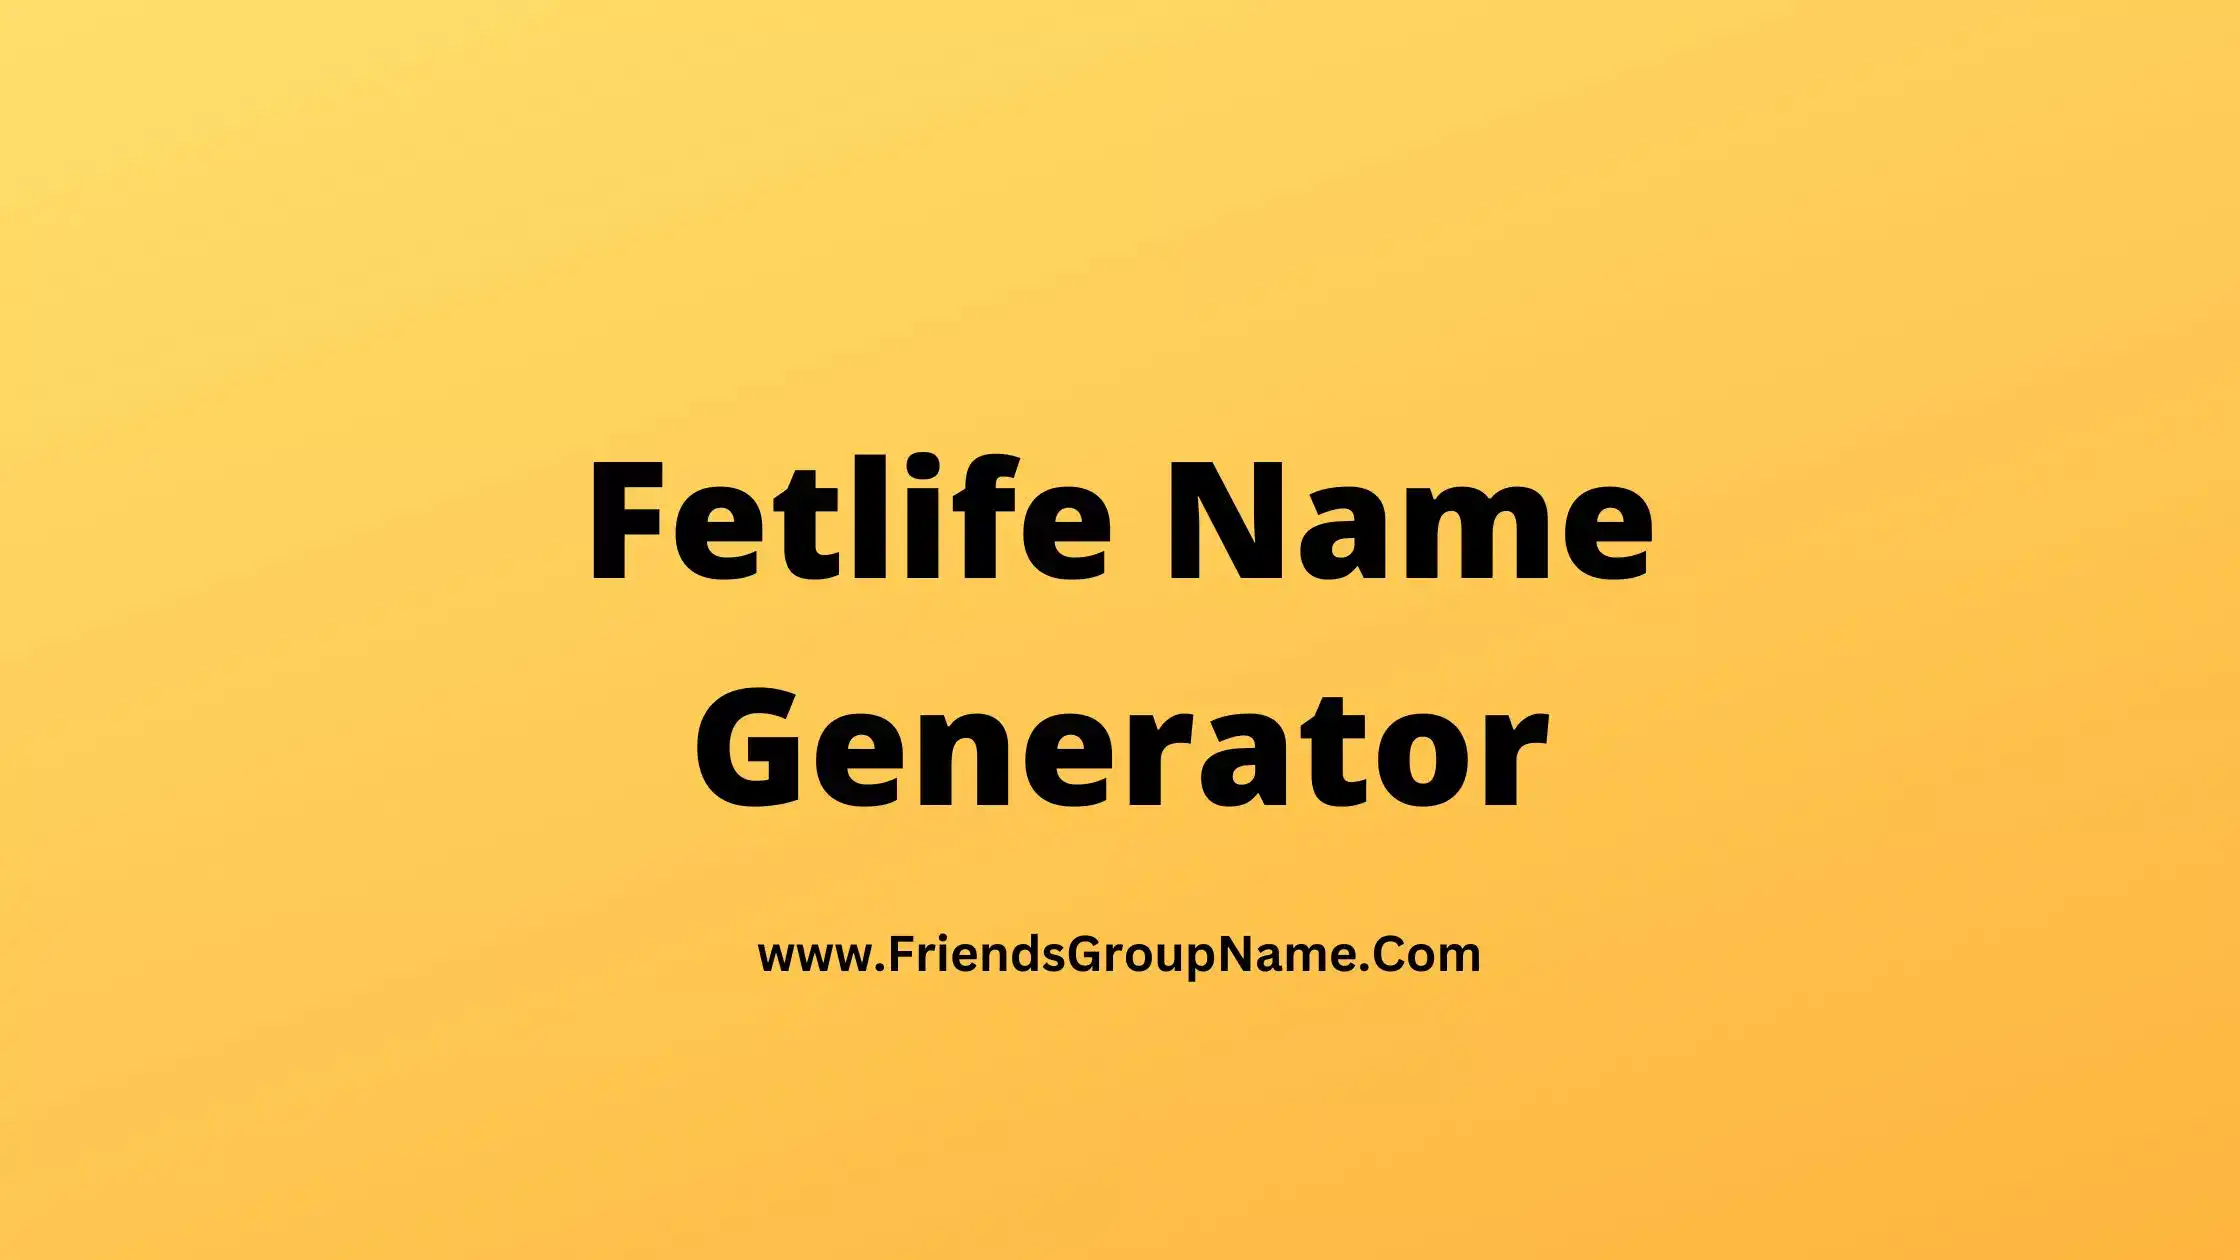 Fetlife Name Generator